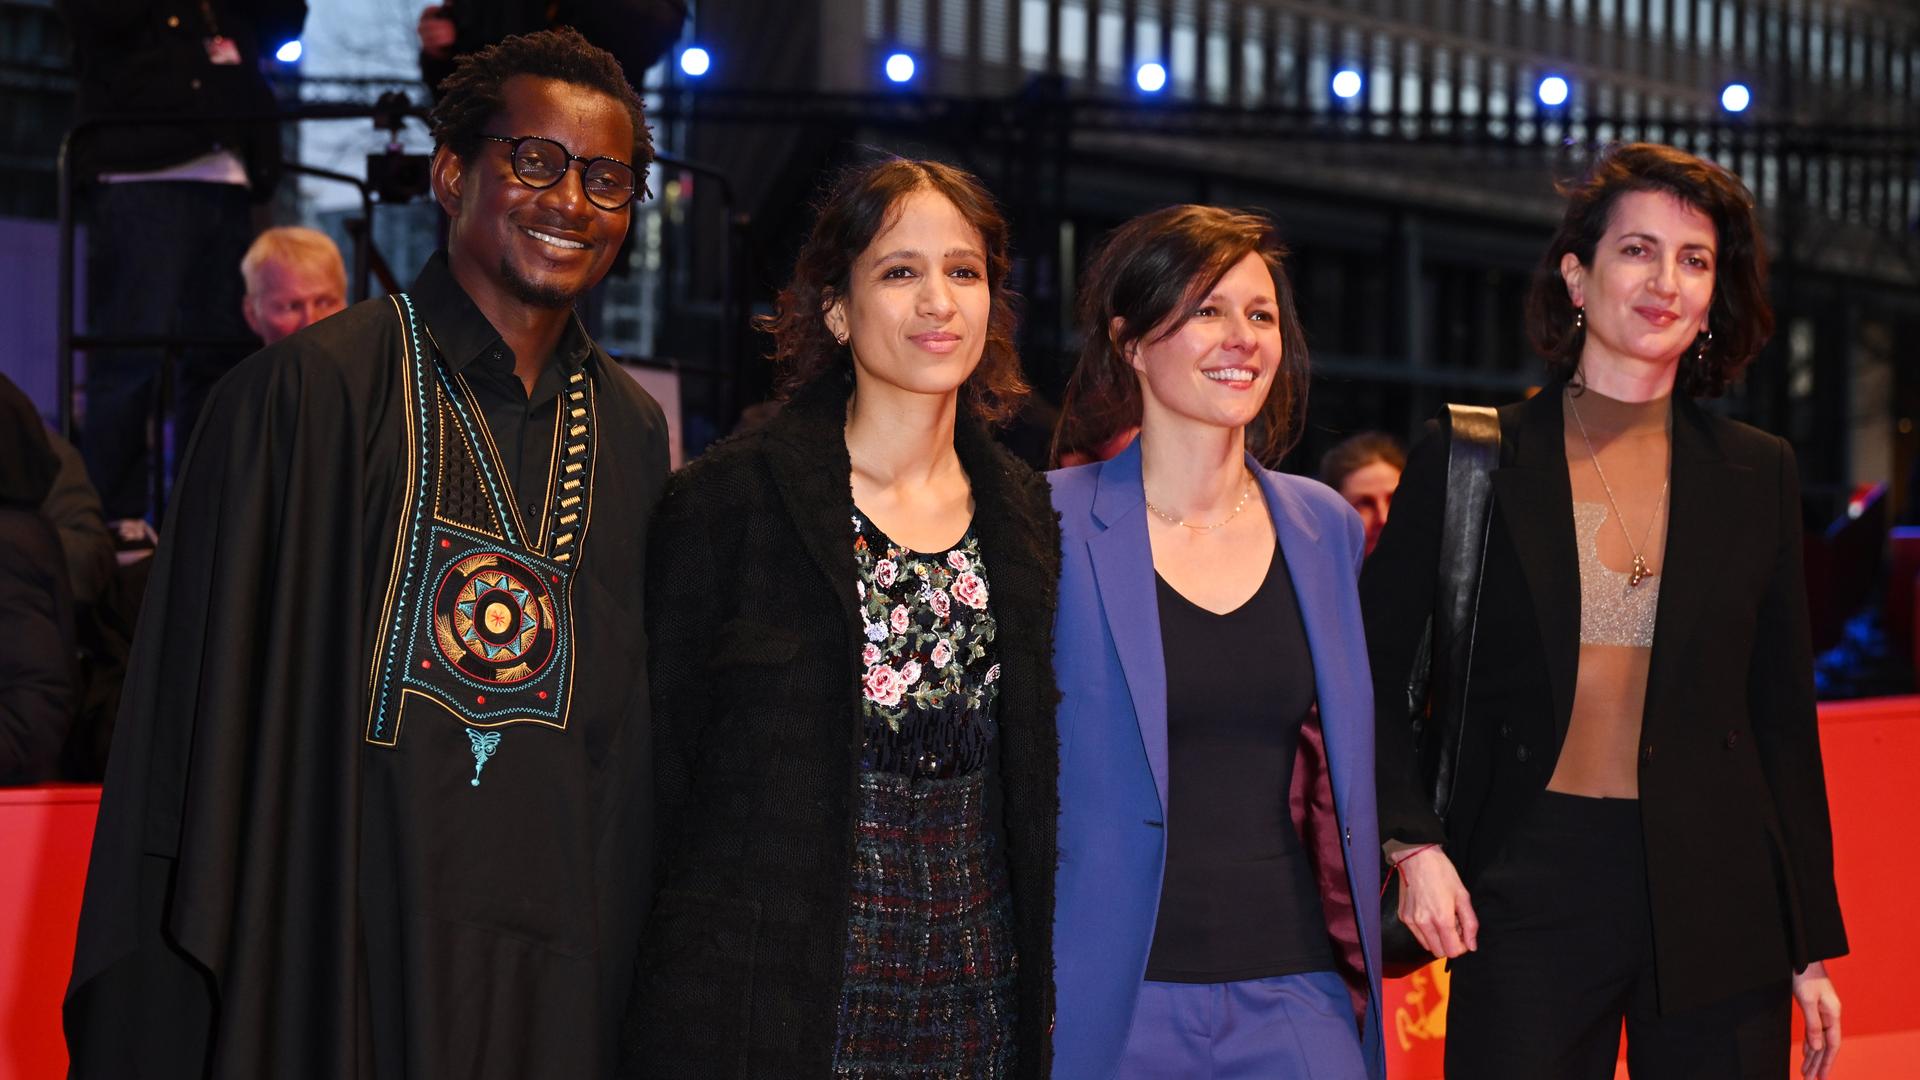 Protagonist Gildas Adannou, Regisseurin und Produzentin Mati Diop und die Produzentinnen Eve Robin und Judith Lou Lévy des Films "Dahomey" gehen über den Roten Teppich zur Preisverleihung bei der Abschlussgala im Berlinale-Palast.